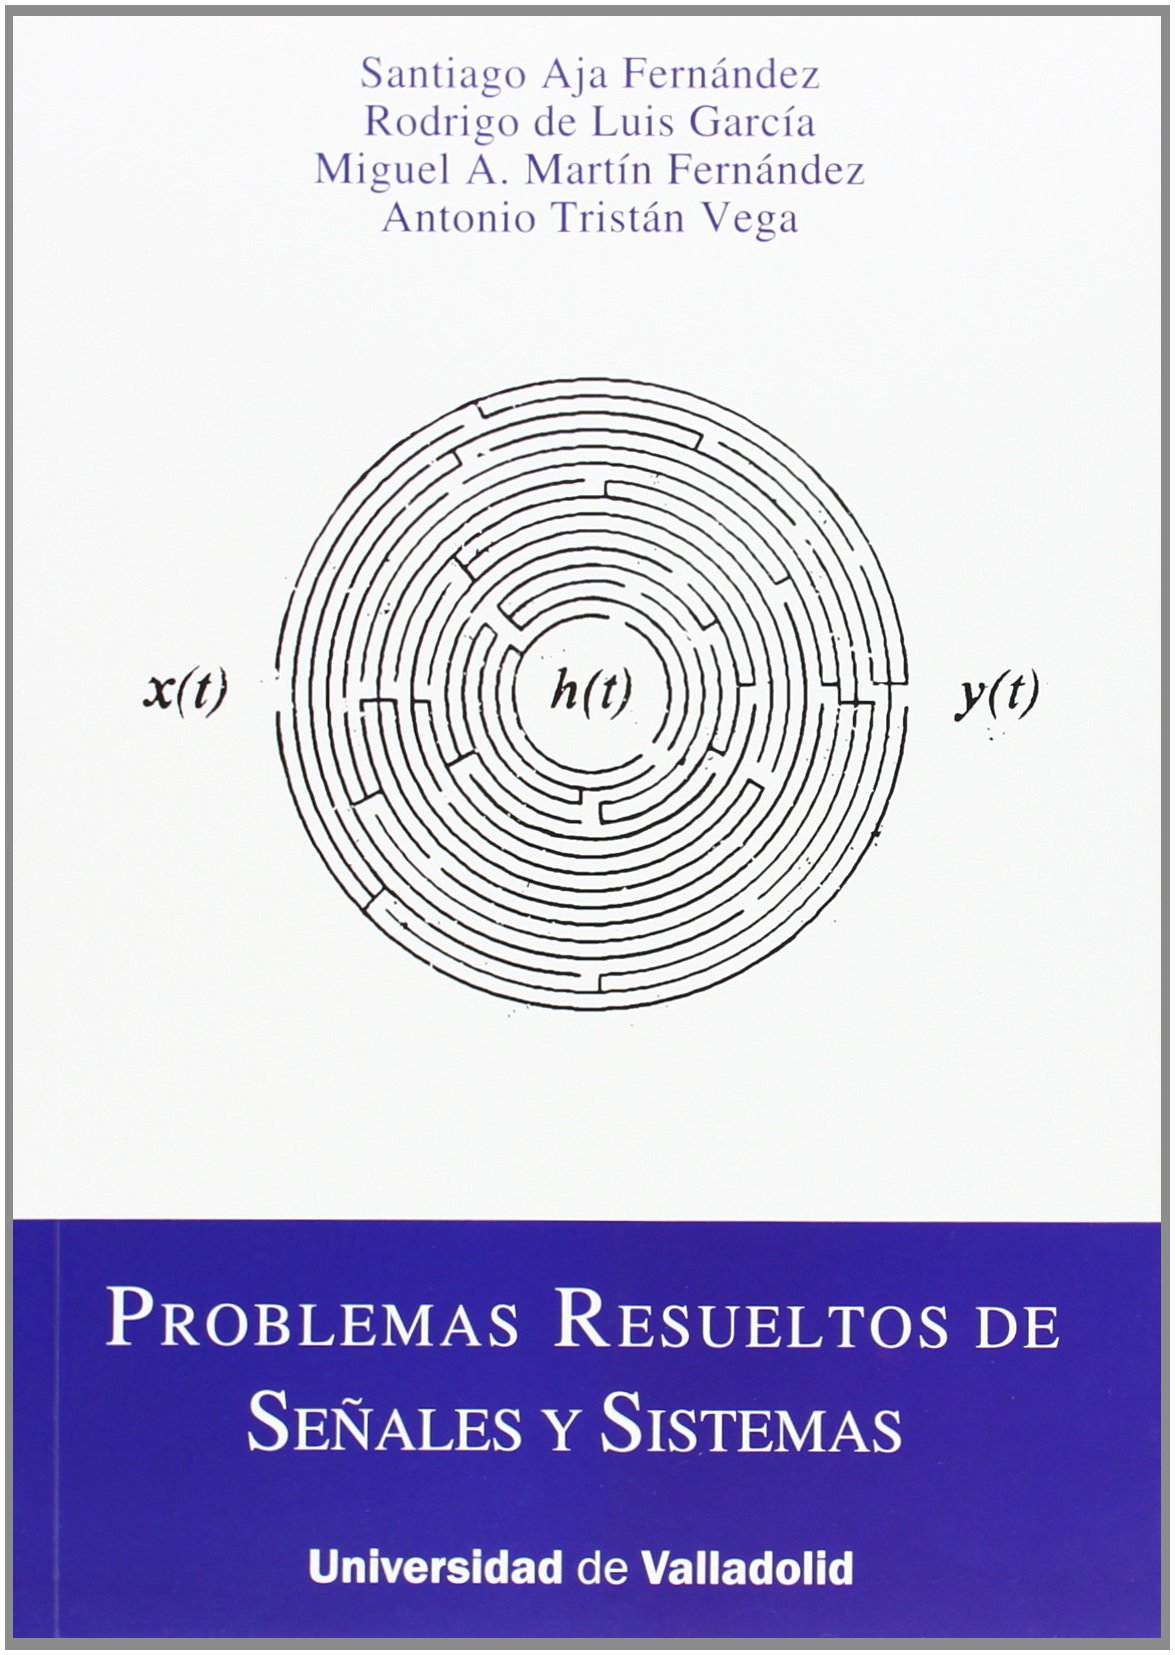 Imagen de portada del libro Problemas resueltos de señales y sistemas